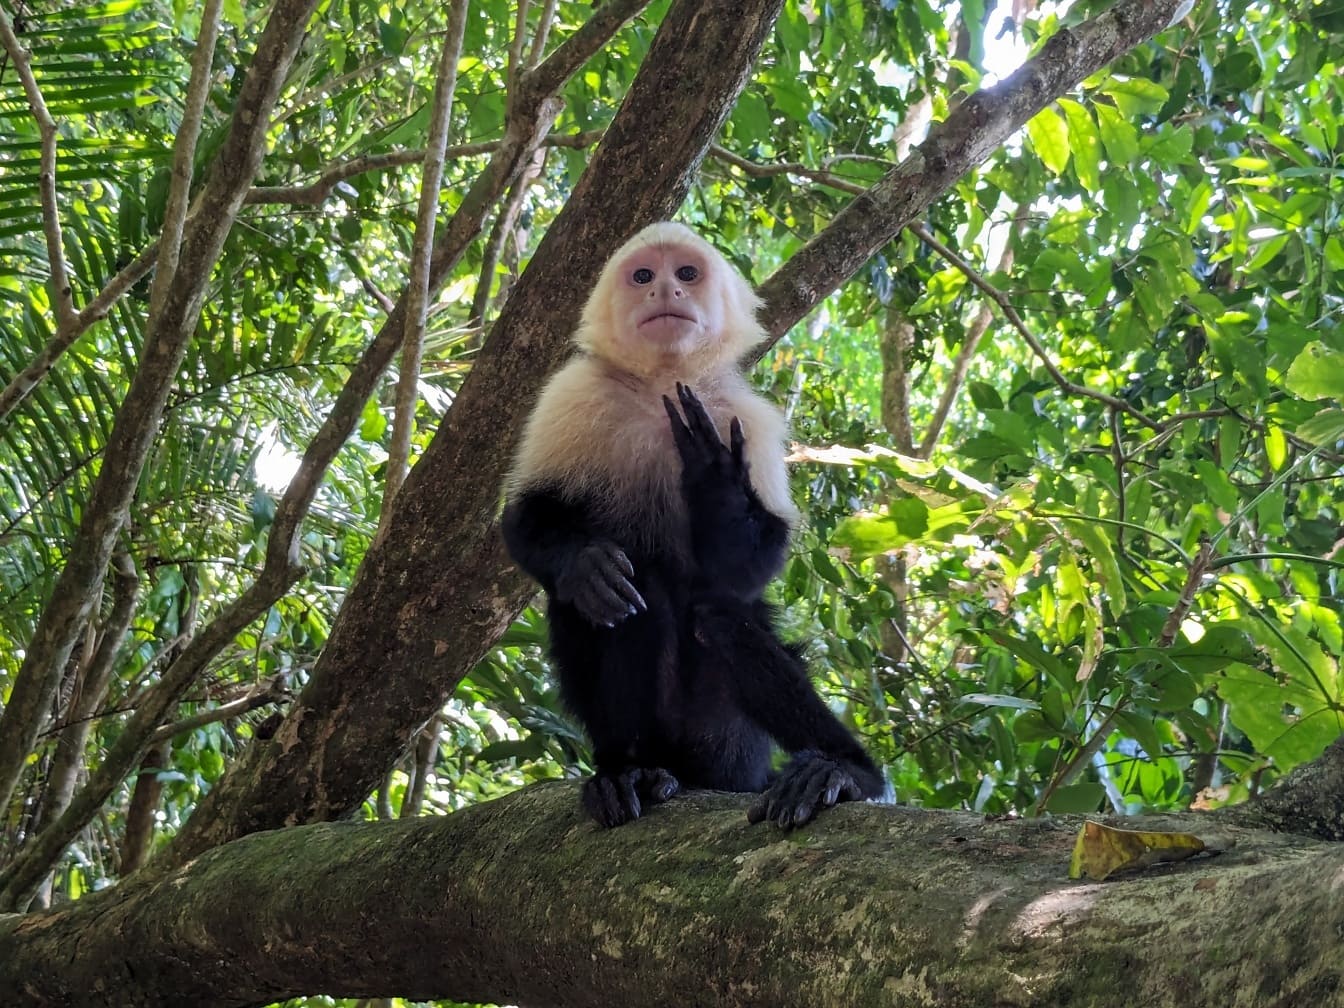 Panamska kapucynka (Cebus imitator) małpa o białej twarzy siedząca na gałęzi drzewa